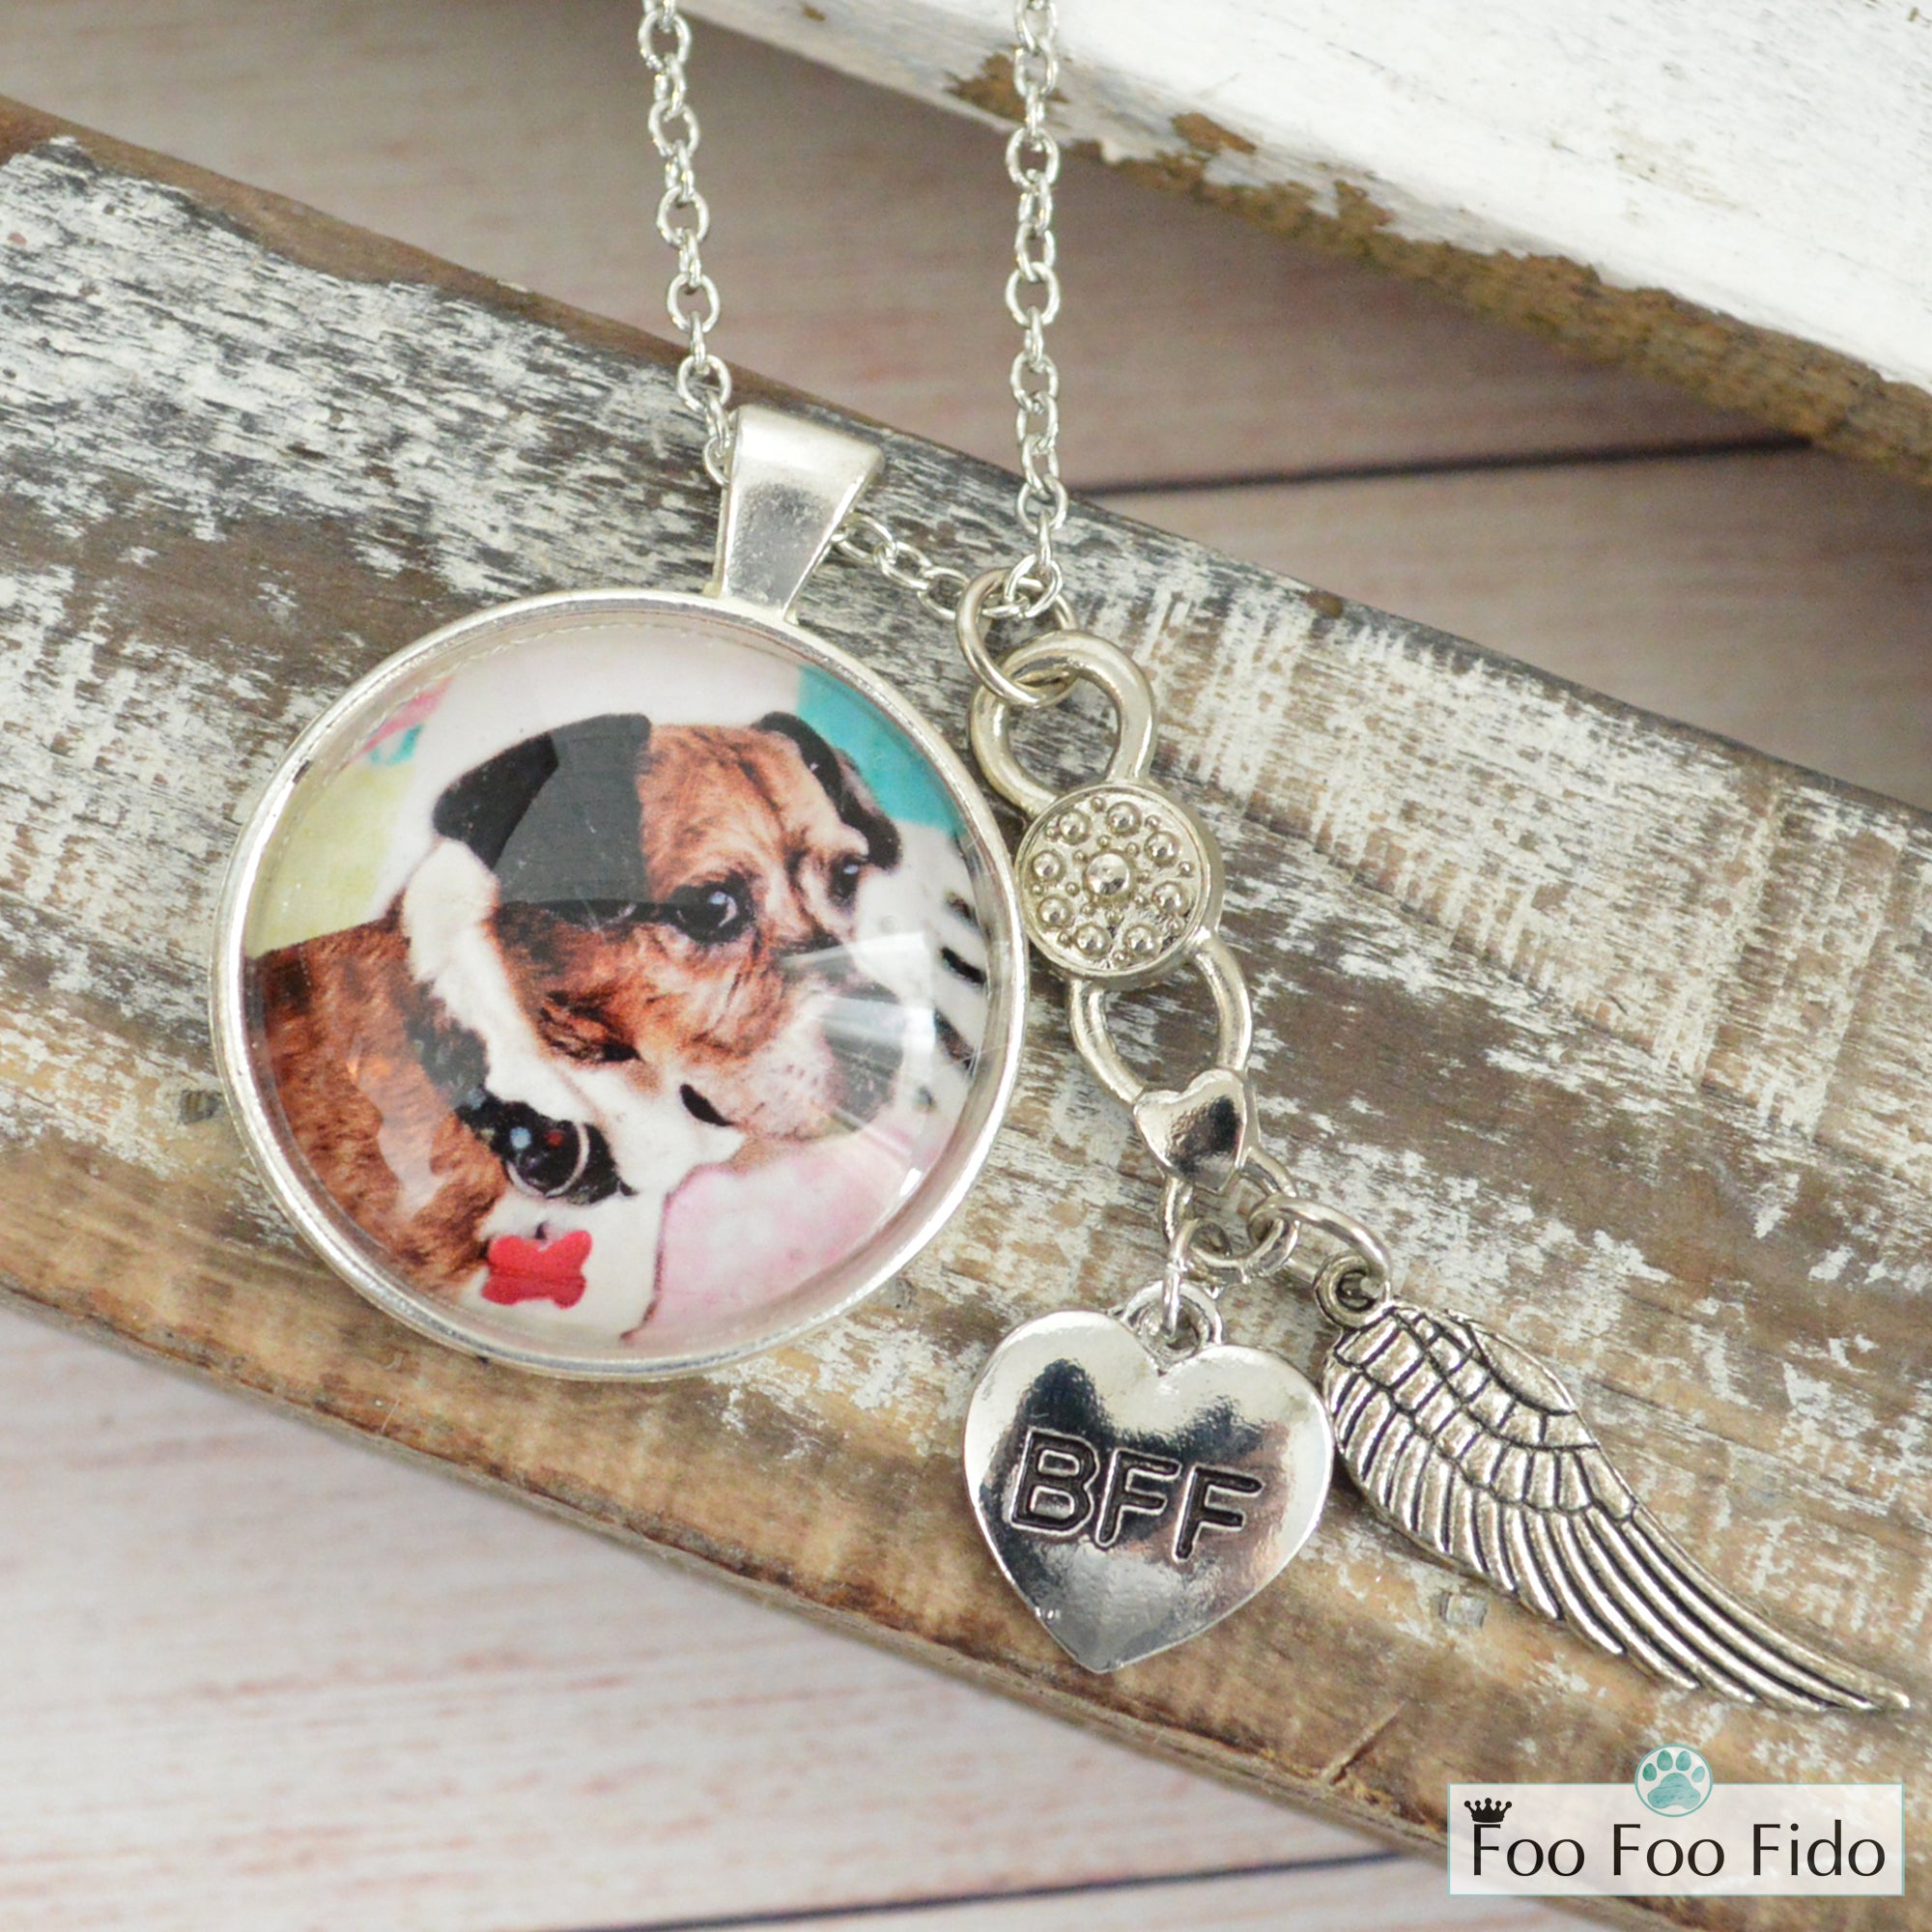 Personalized Photo Custom Pet Portrait Necklace